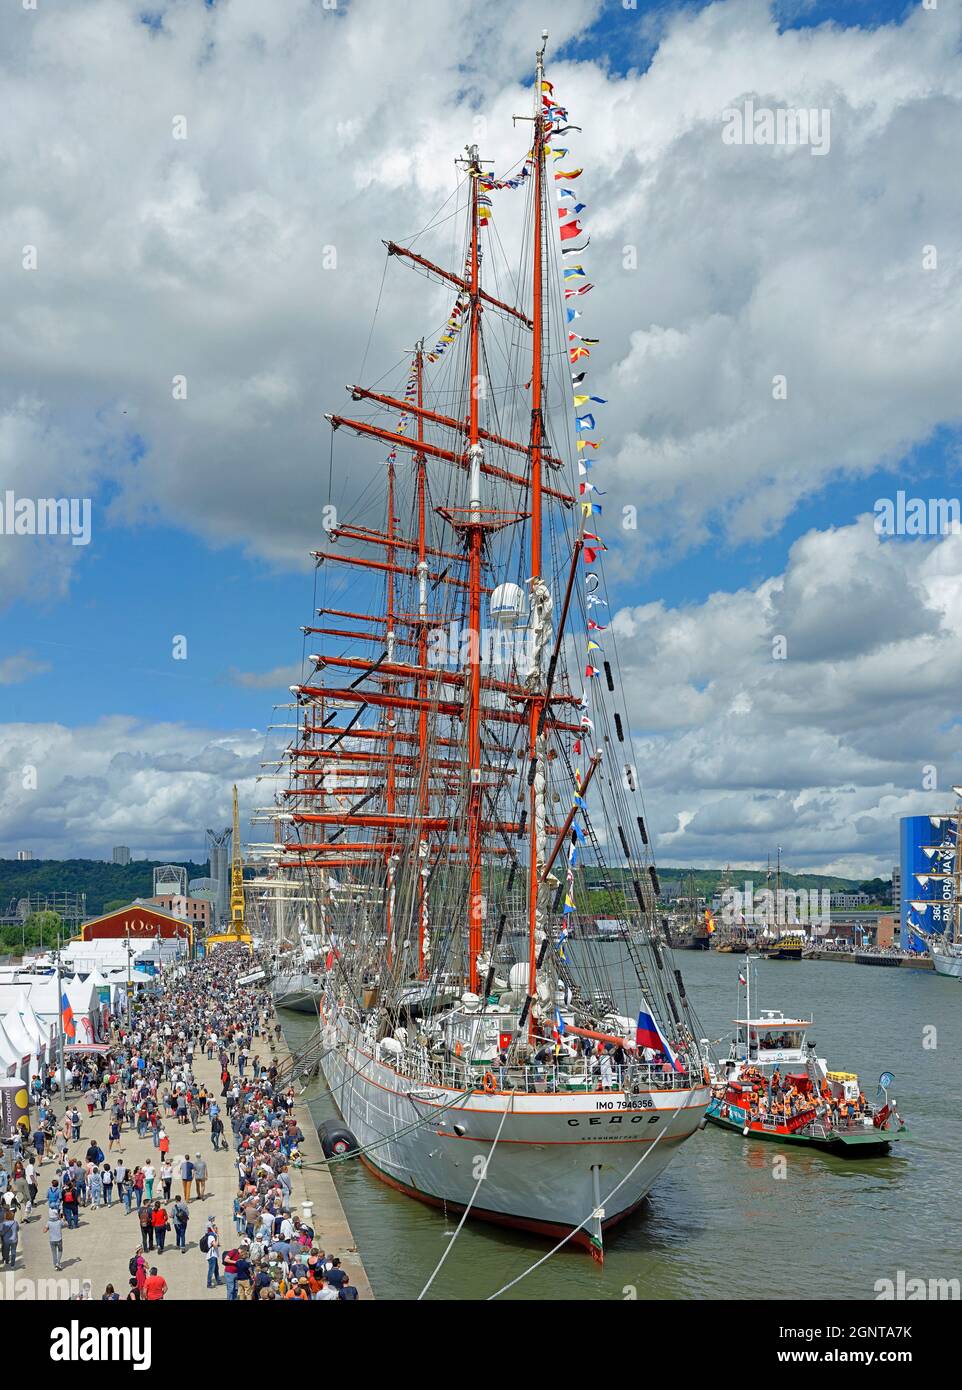 Francia, Seine Maritime (76), Rouen, l'Armada 2019, le Sedov navire russe, foule de touristes visitant les vieux gréement sur les quais de la Seine // Foto Stock